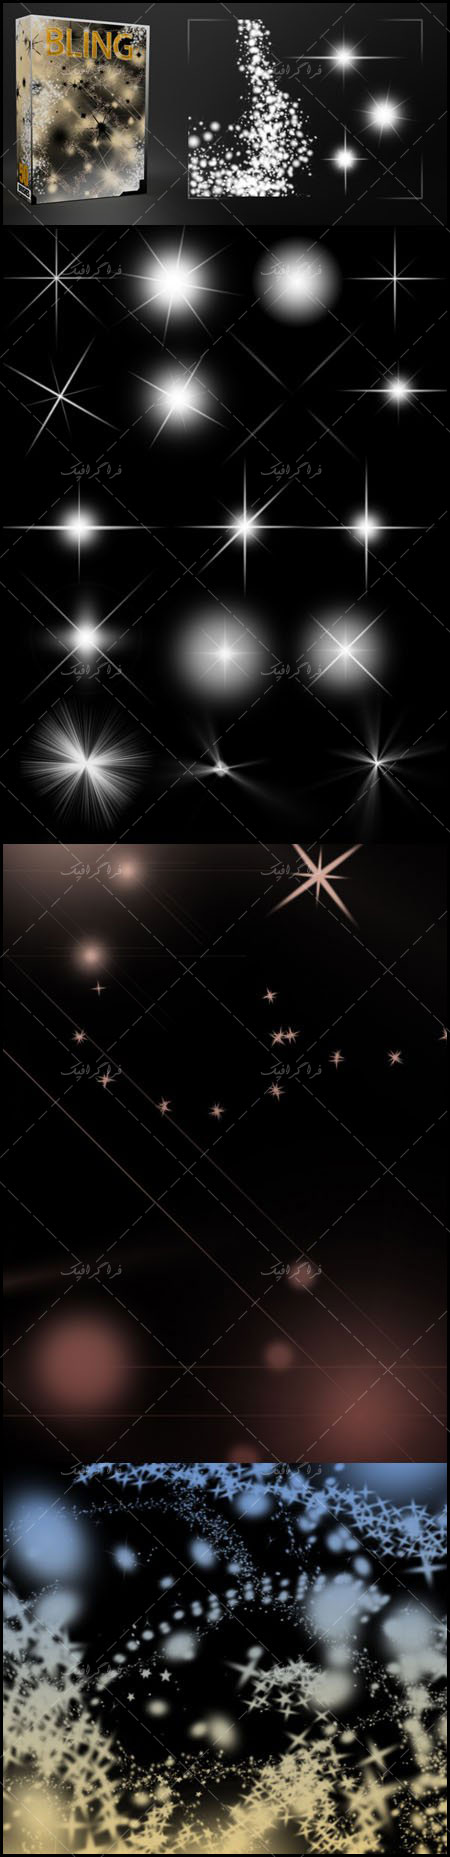 براش های فتوشاپ افکت نور و ستاره - شماره 3